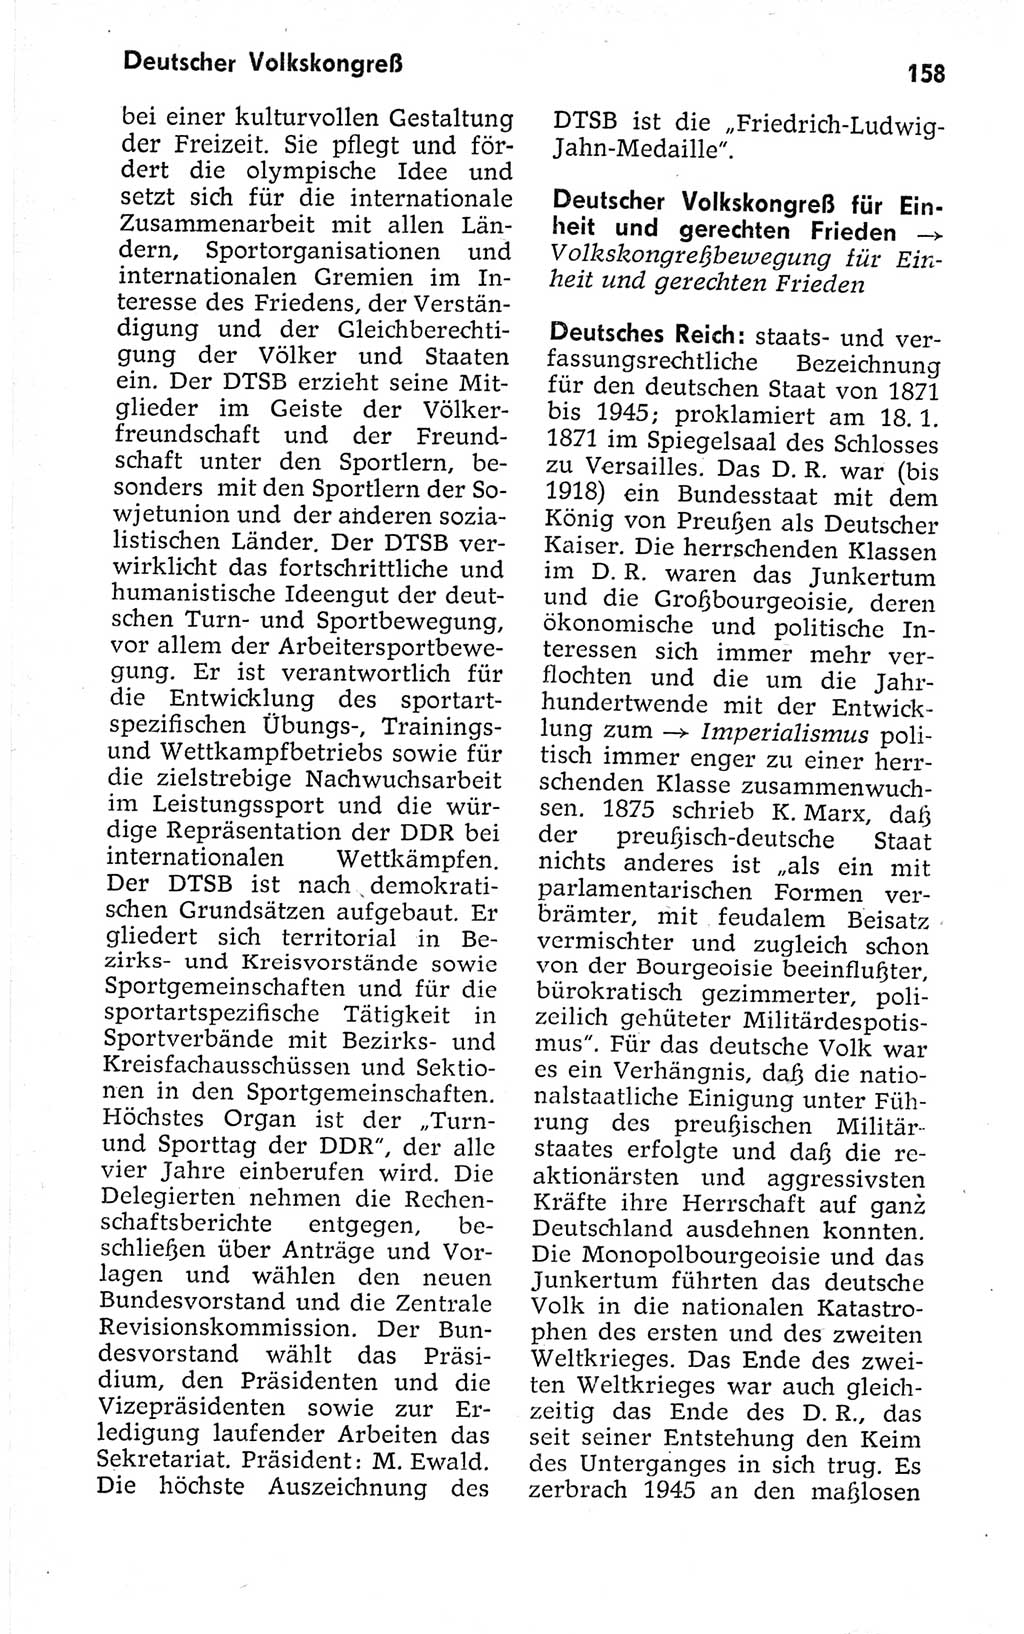 Kleines politisches Wörterbuch [Deutsche Demokratische Republik (DDR)] 1973, Seite 158 (Kl. pol. Wb. DDR 1973, S. 158)